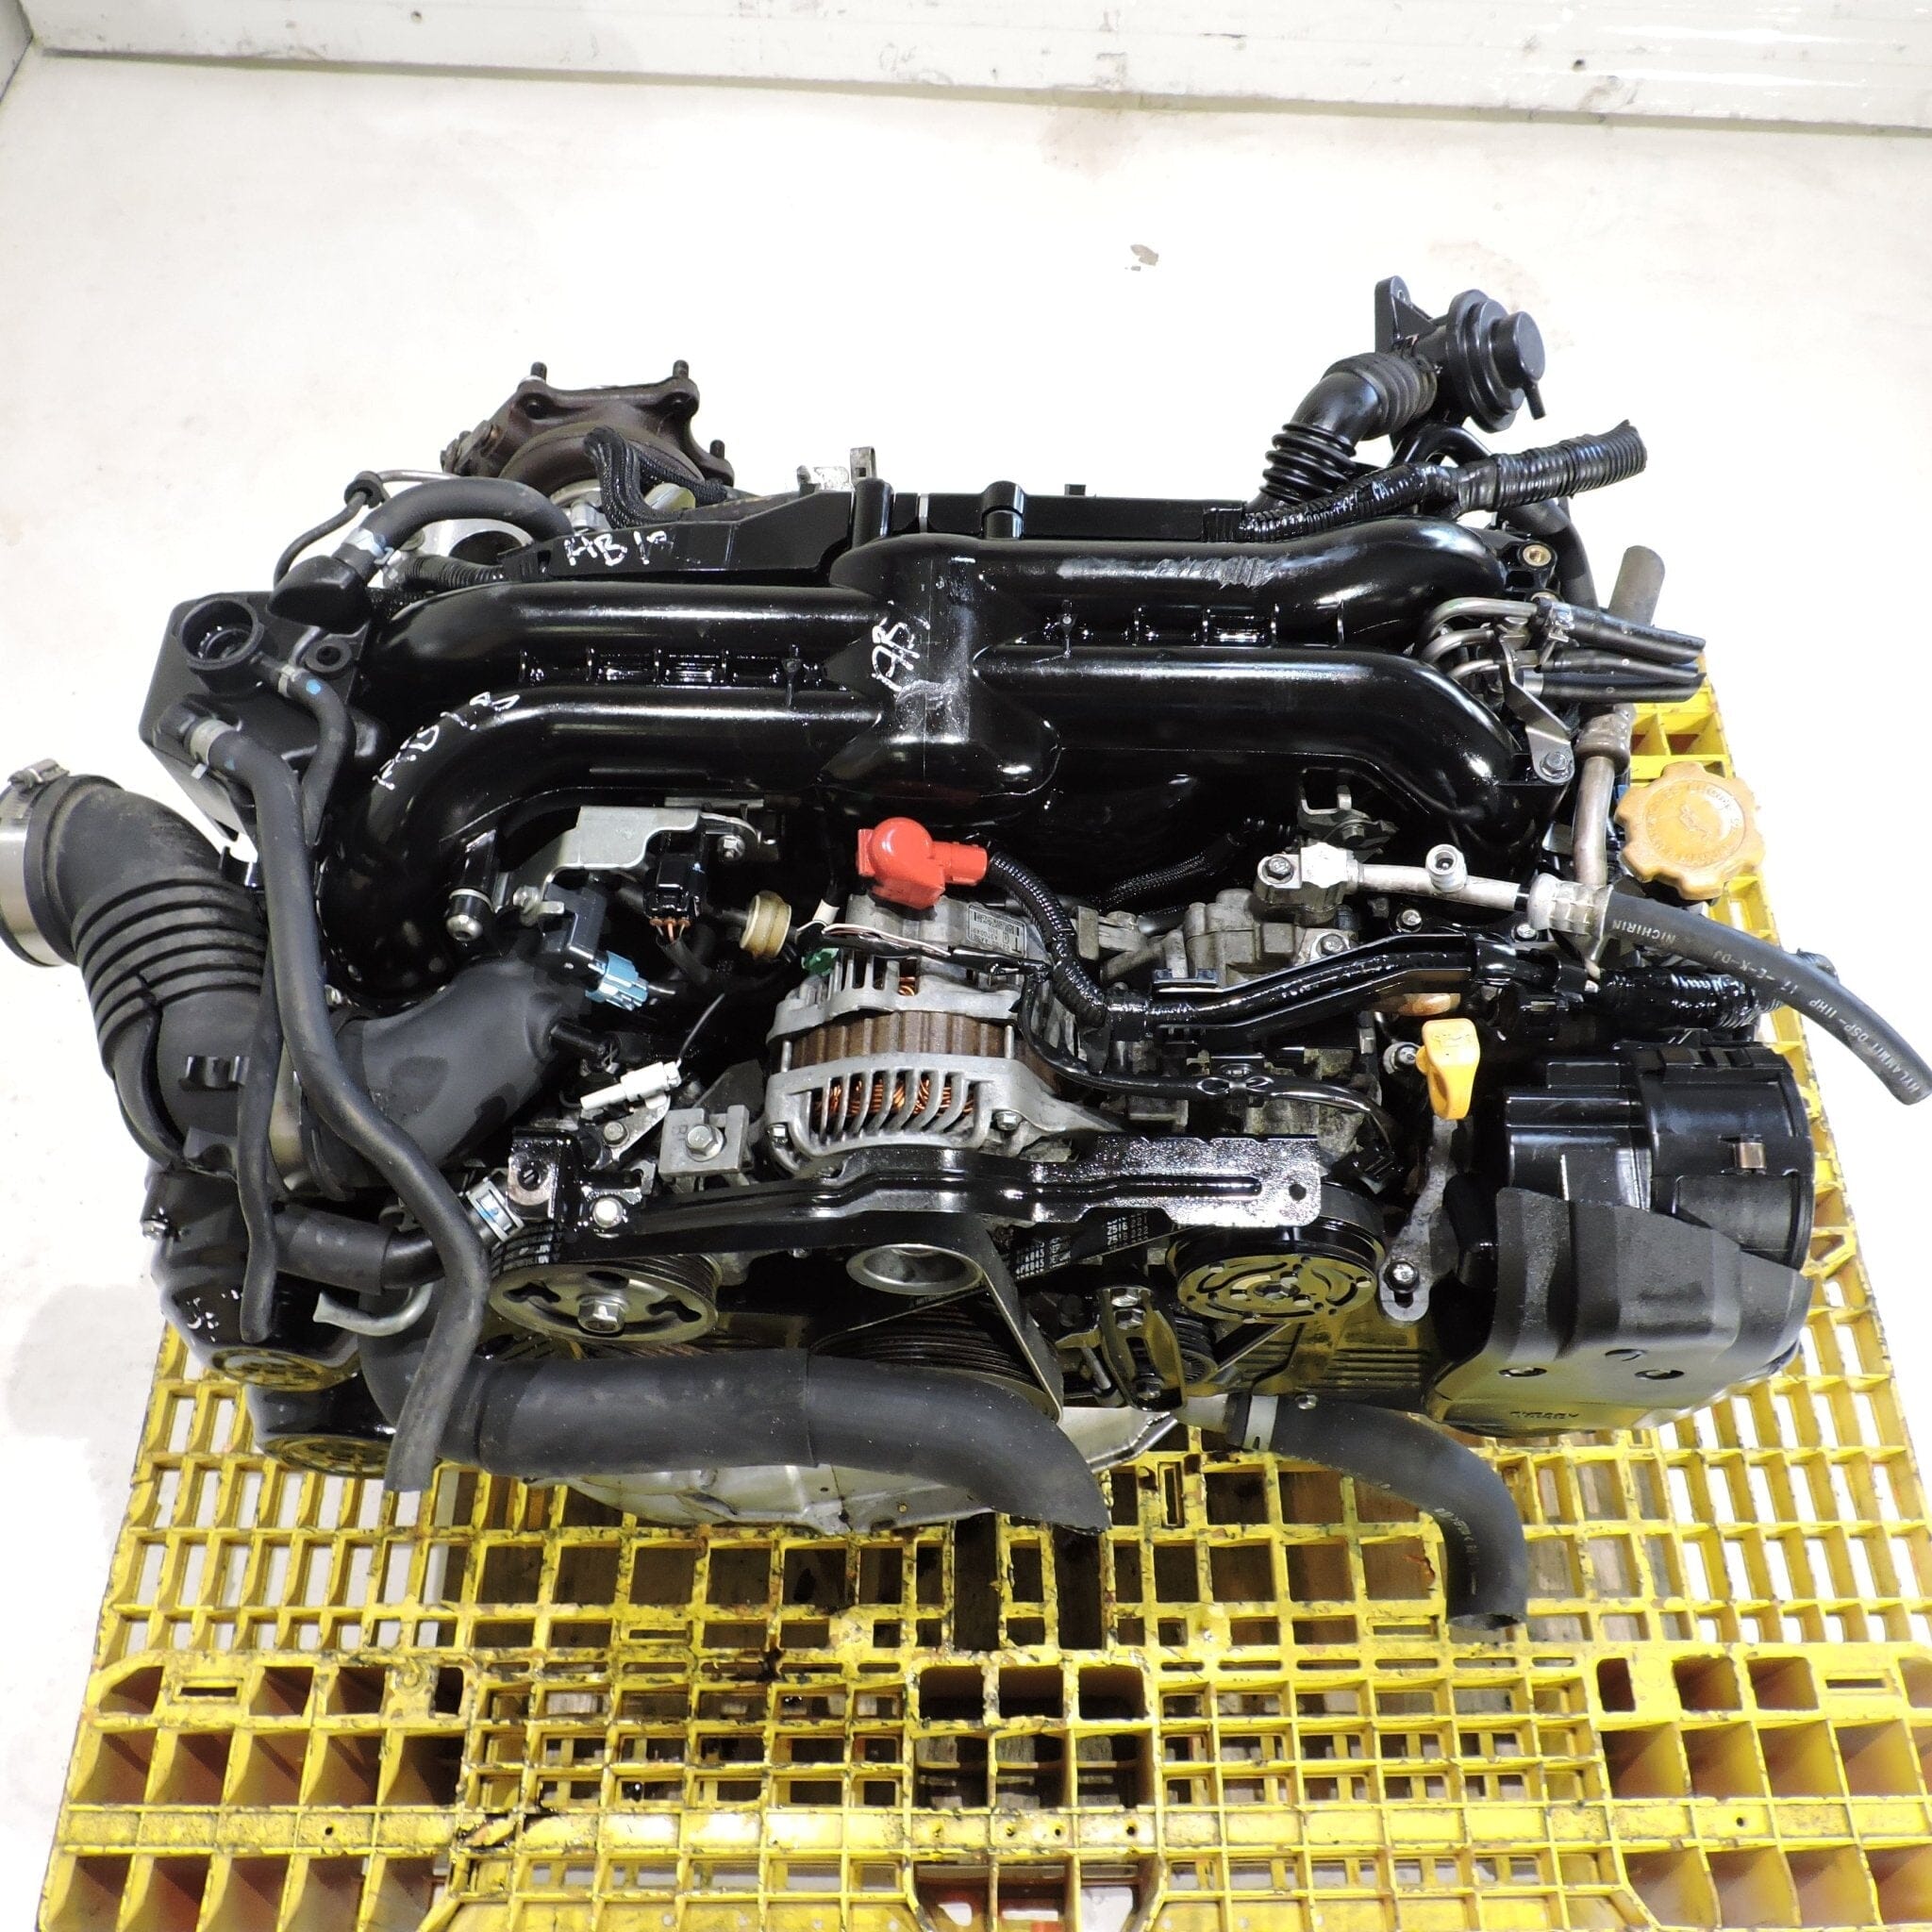 Subaru Impreza Wrx 2006-2012 2.0L Turbo Jdm Engine - EJ20X